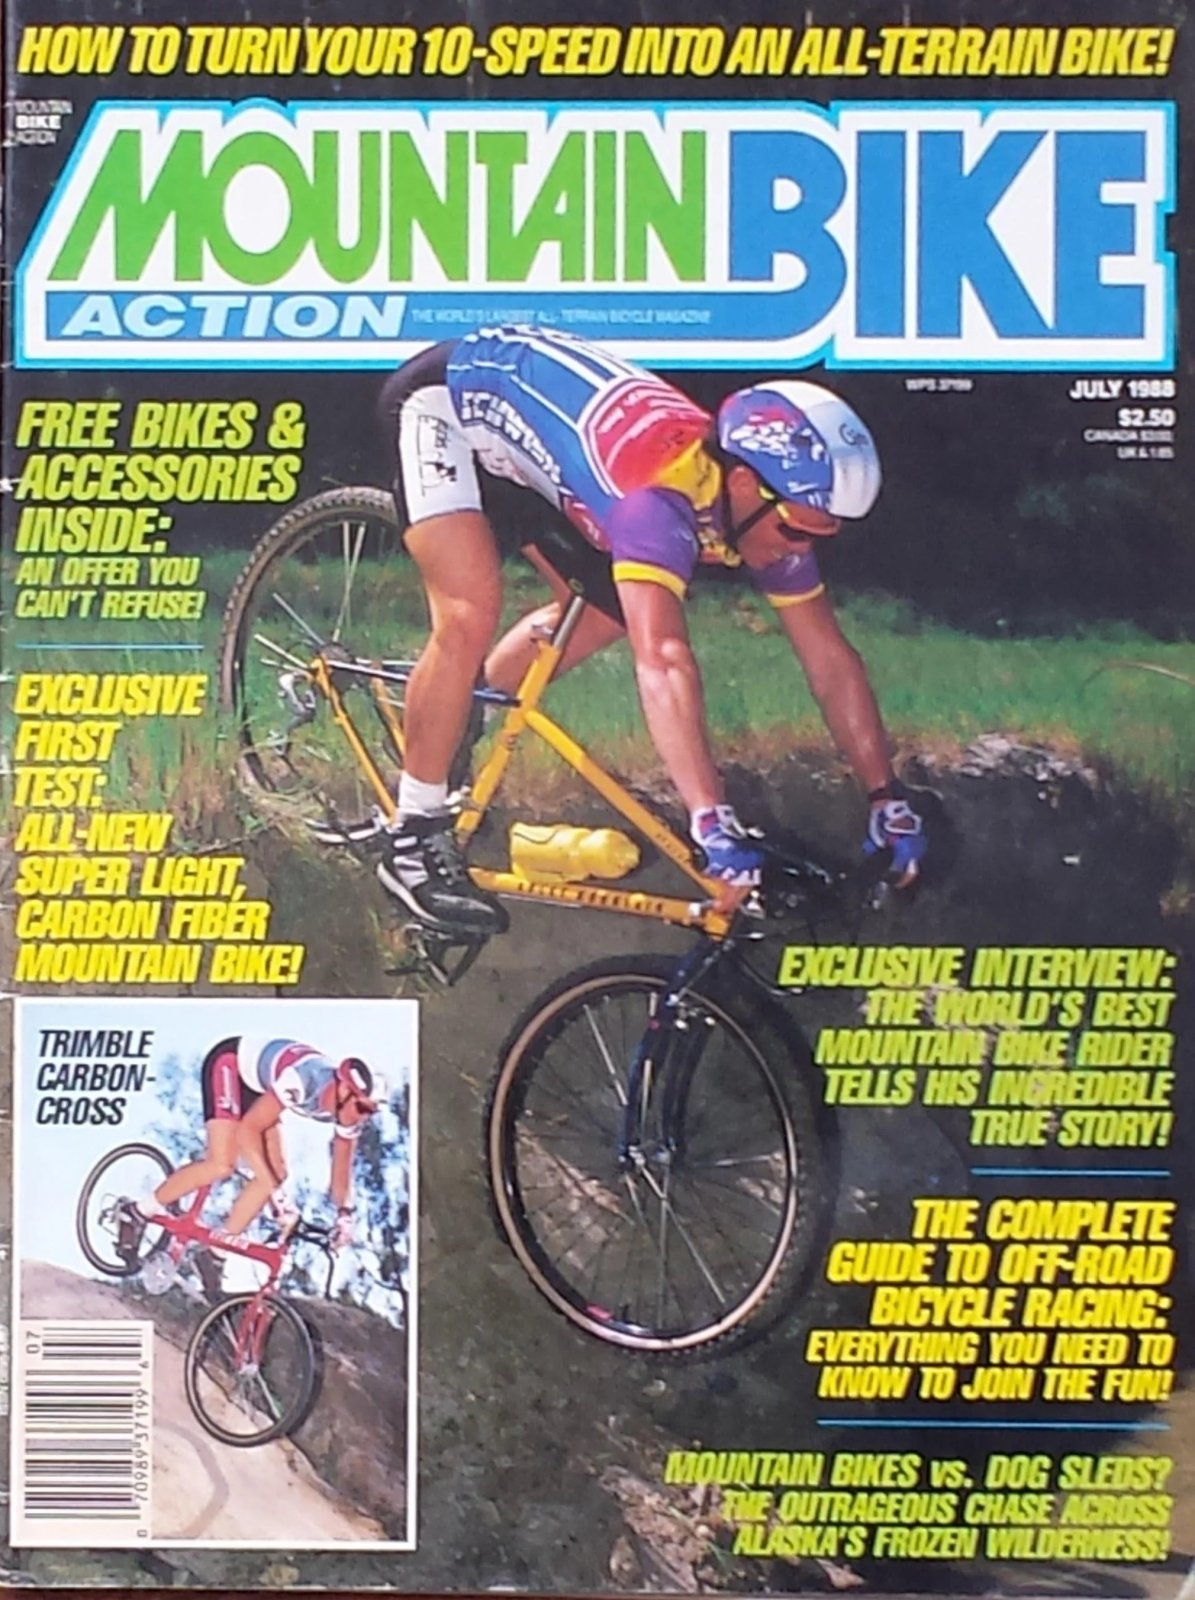 MBA 1988 July - Turning a road bike into a mountain bike 1.jpg